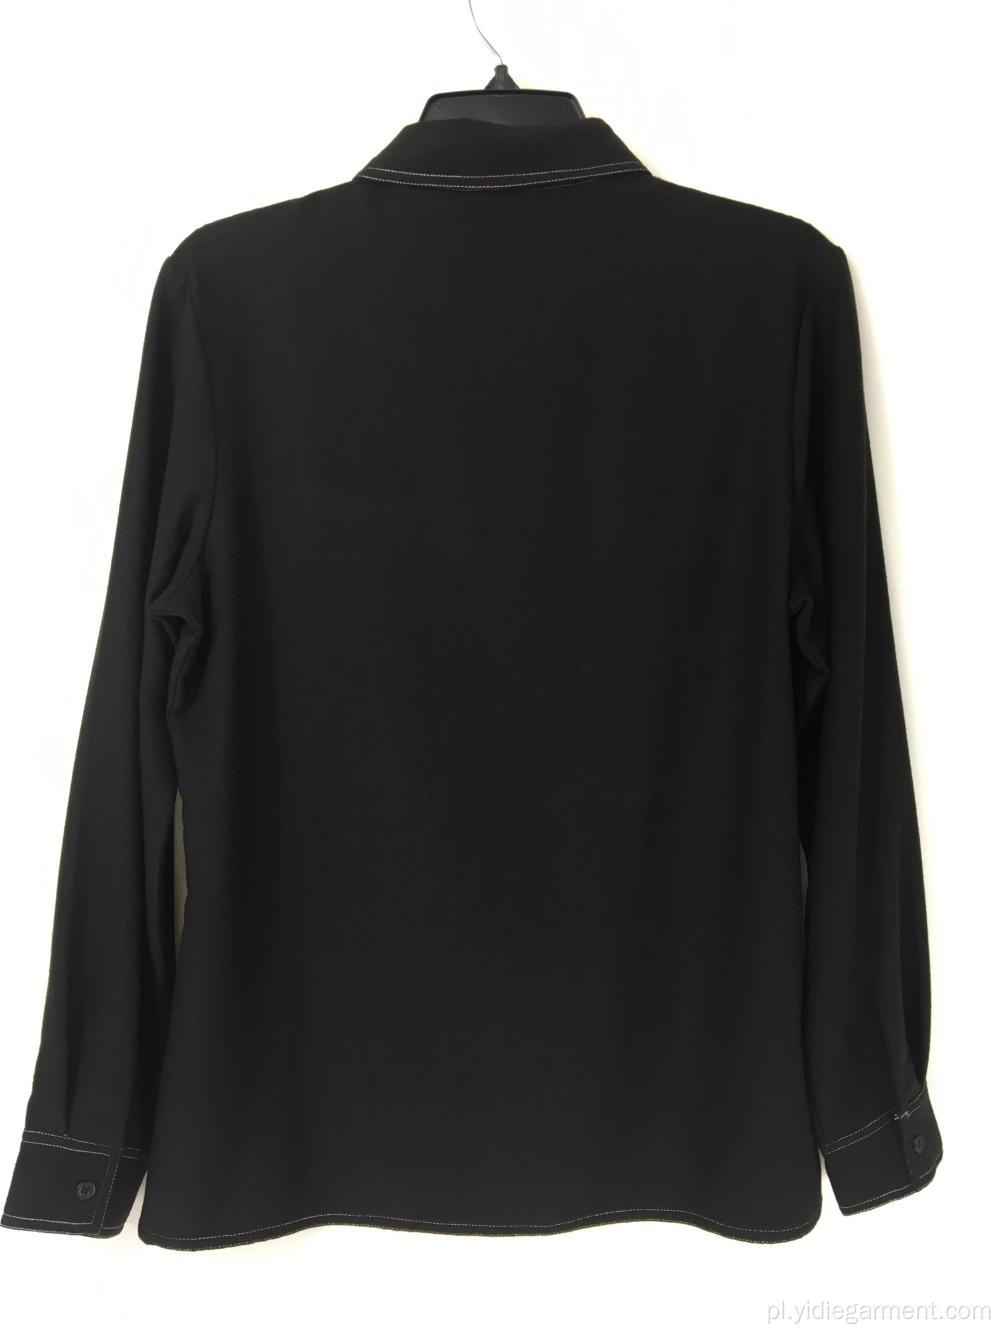 Koszula dżinsowa z długim rękawem w kolorze czarnym